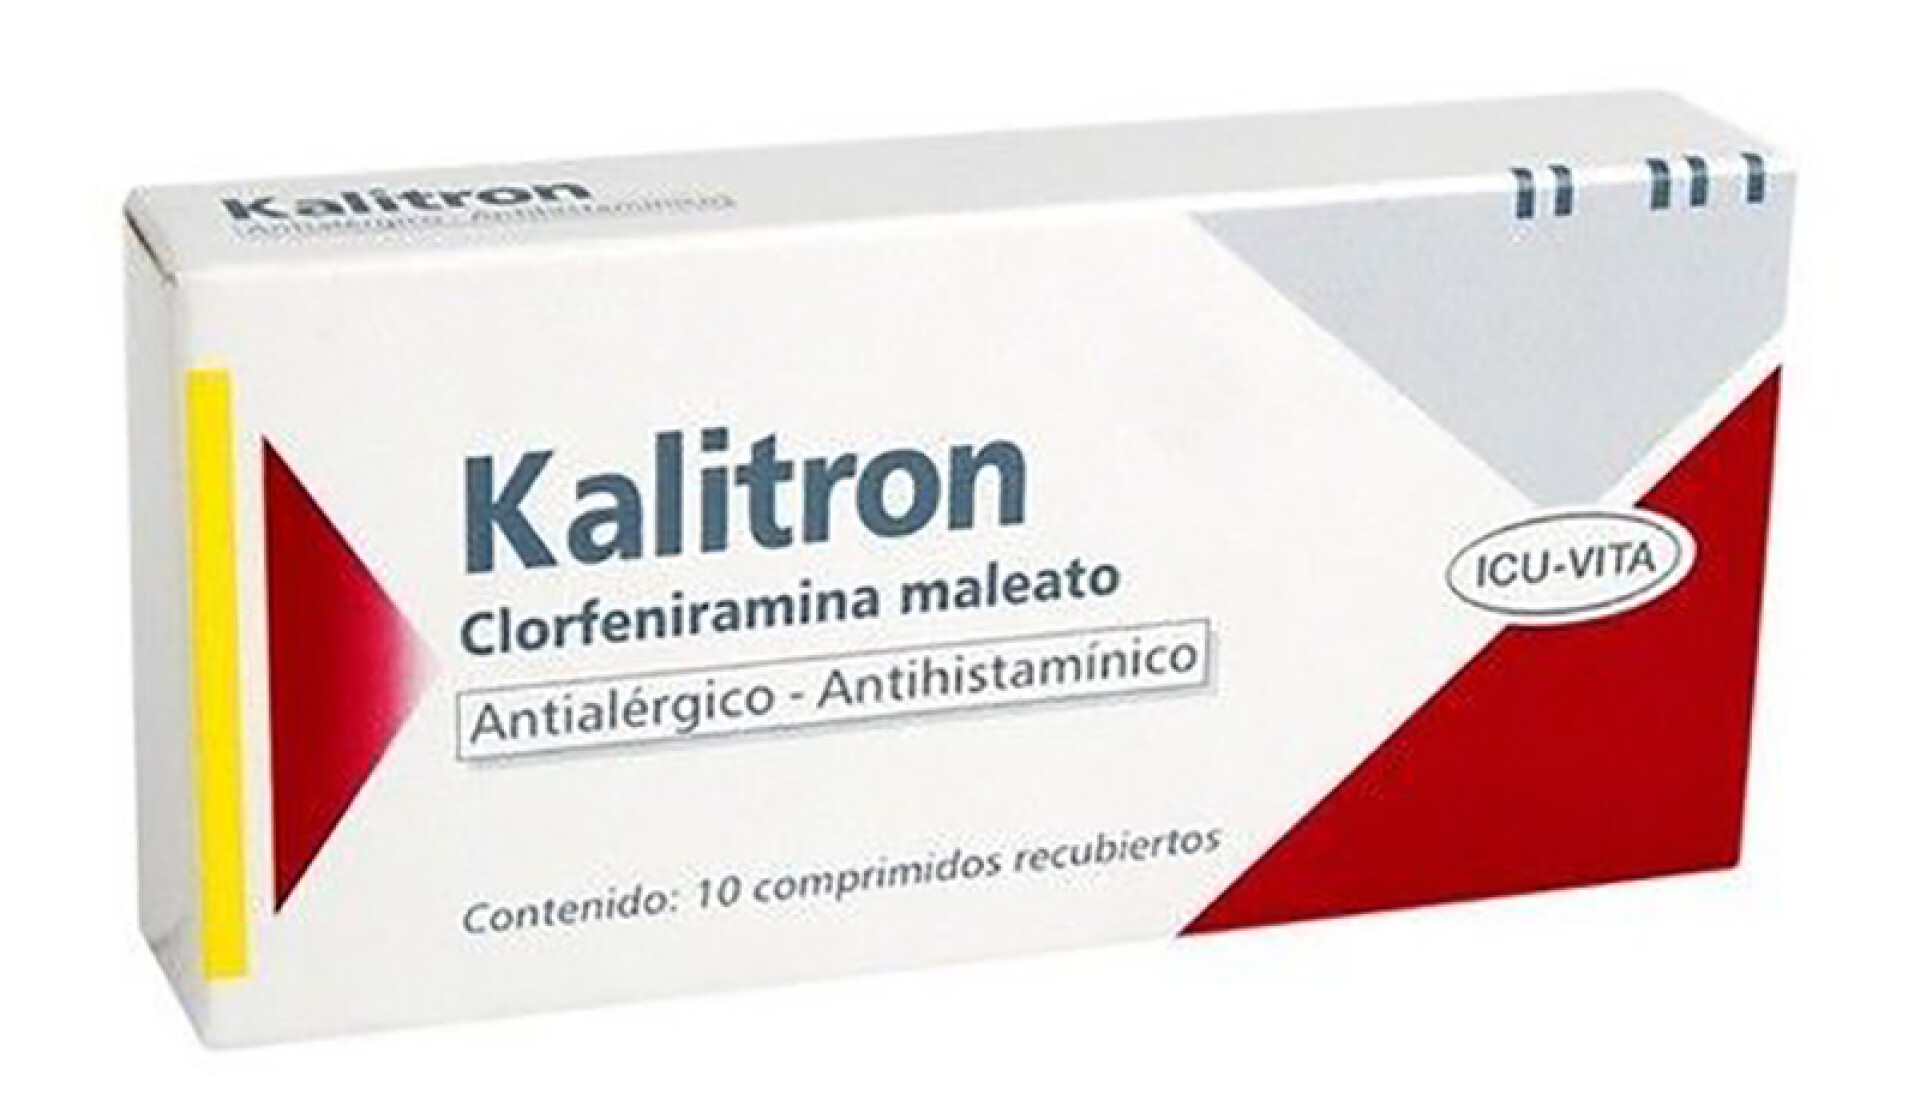 Kalitron antialérgico - simple x10 comprimidos 